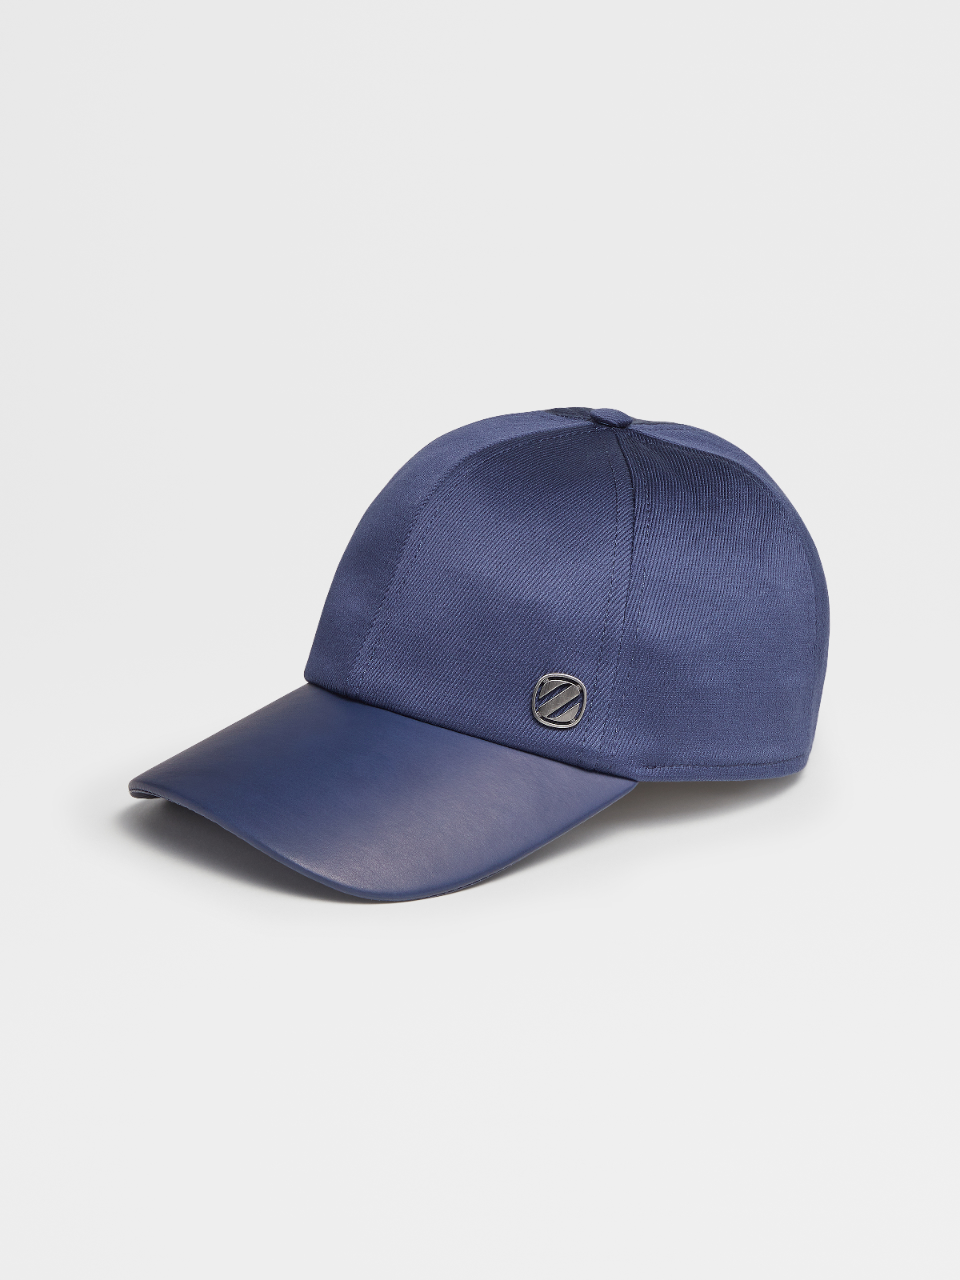 中蓝色棉及大麻混纺材质 Z 字复古标识棒球帽